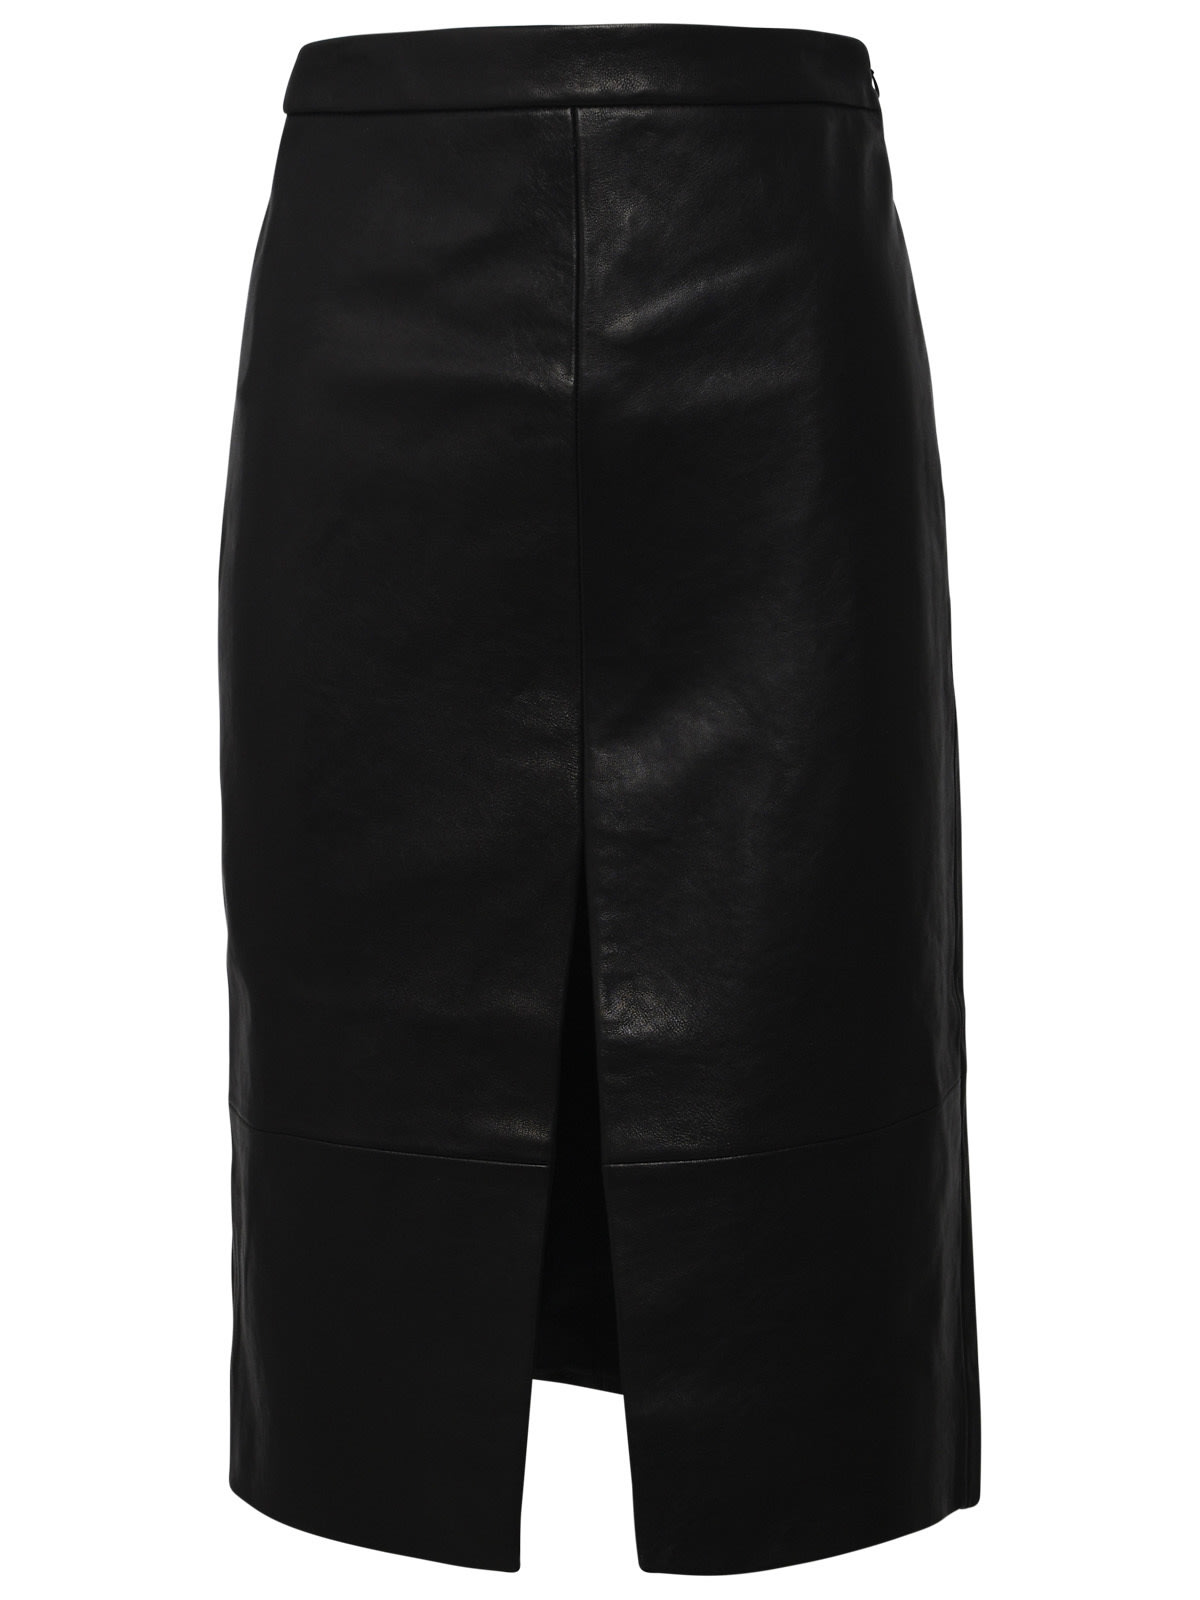 Freser Black Leather Skirt